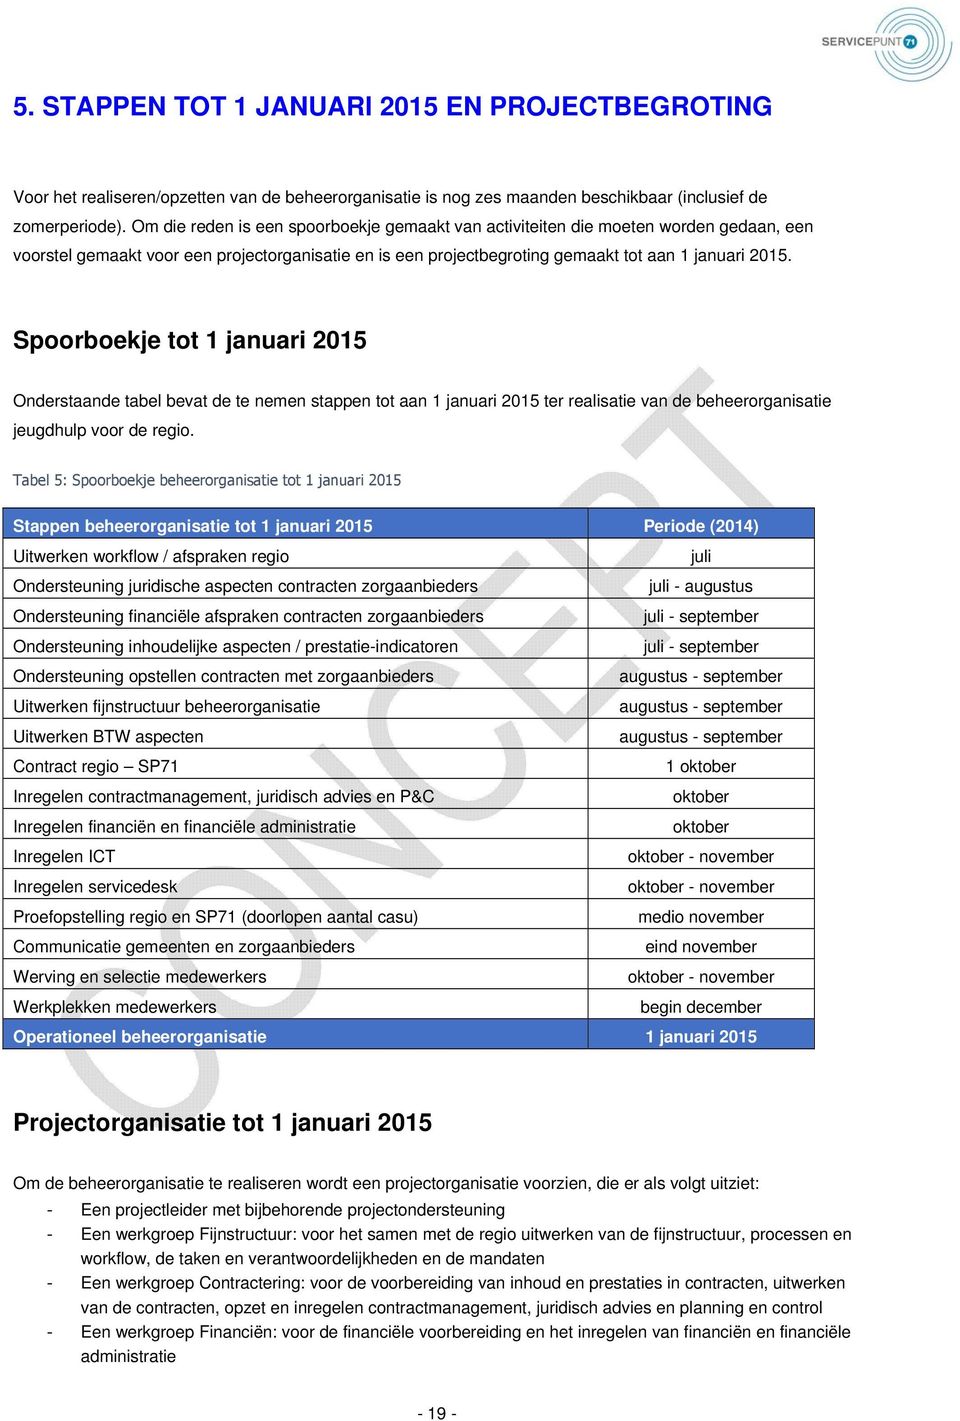 Spoorboekje tot 1 januari 2015 Onderstaande tabel bevat de te nemen stappen tot aan 1 januari 2015 ter realisatie van de beheerorganisatie jeugdhulp voor de regio.